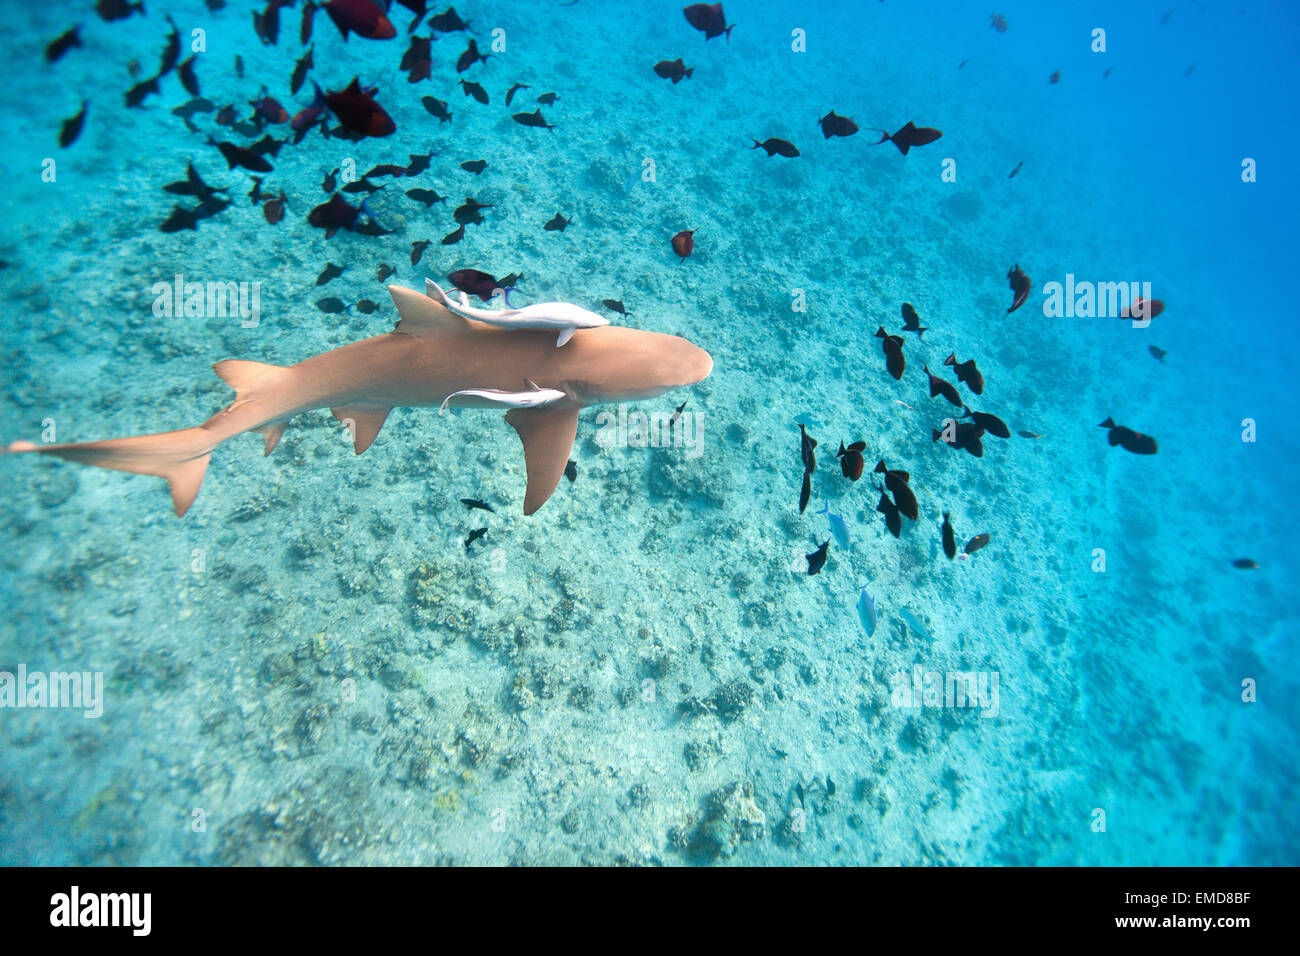 Lemon shark Stock Photo